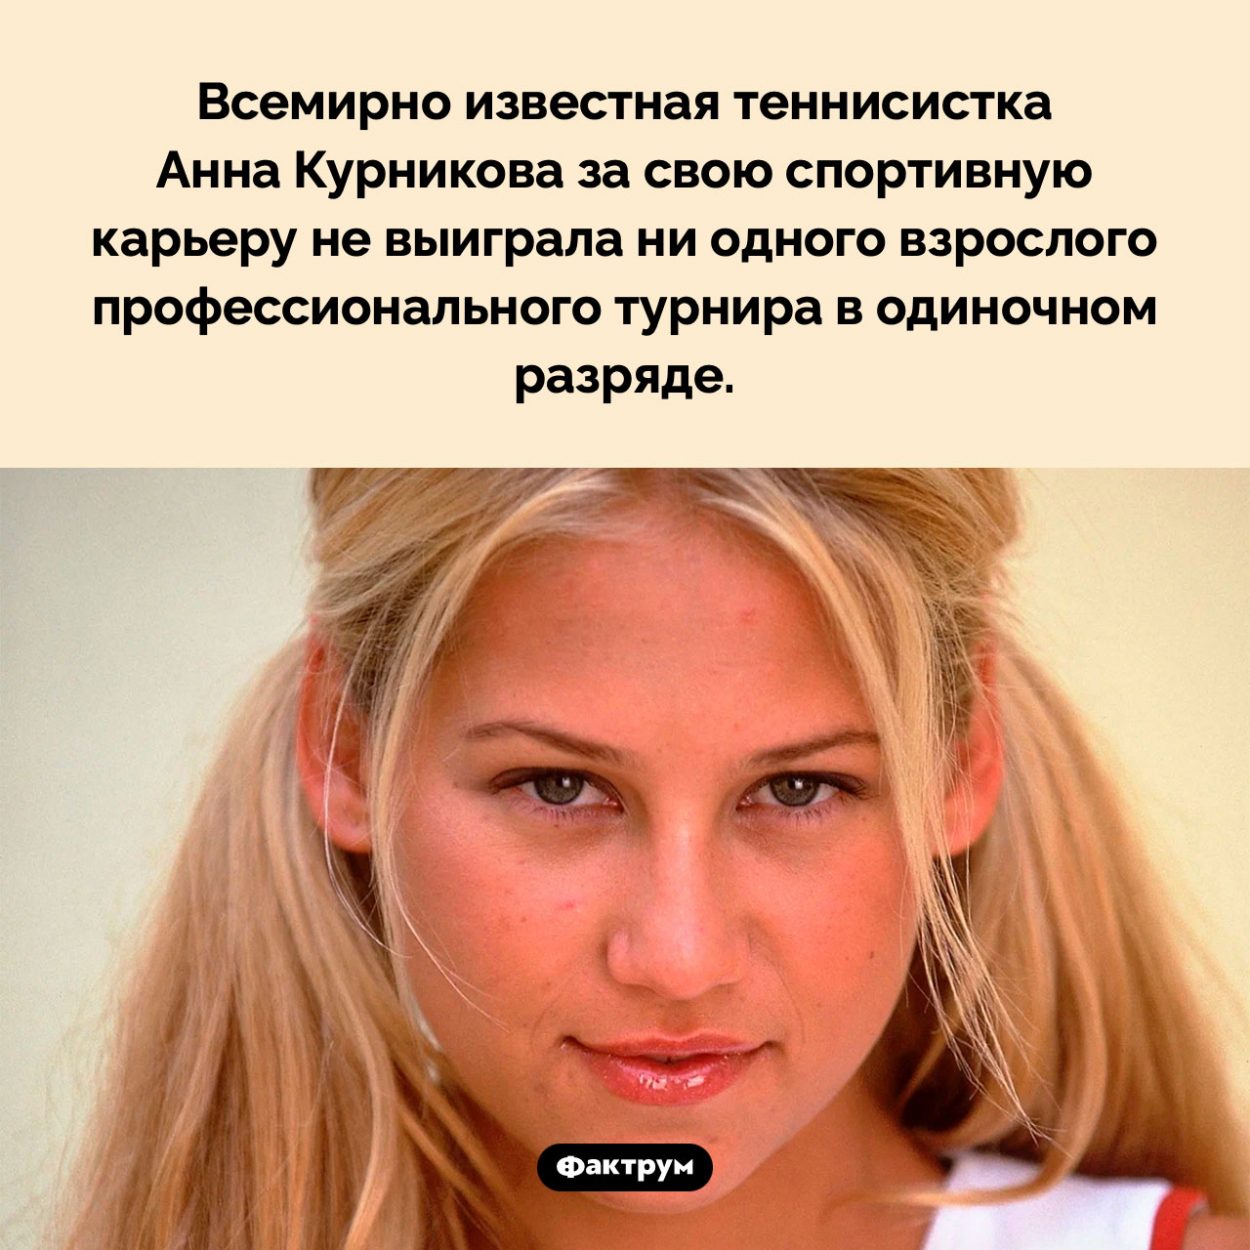 Анна Курникова не выигрывала взрослых турниров в одиночном разряде. Всемирно известная теннисистка Анна Курникова за свою спортивную карьеру не выиграла ни одного взрослого профессионального турнира в одиночном разряде.